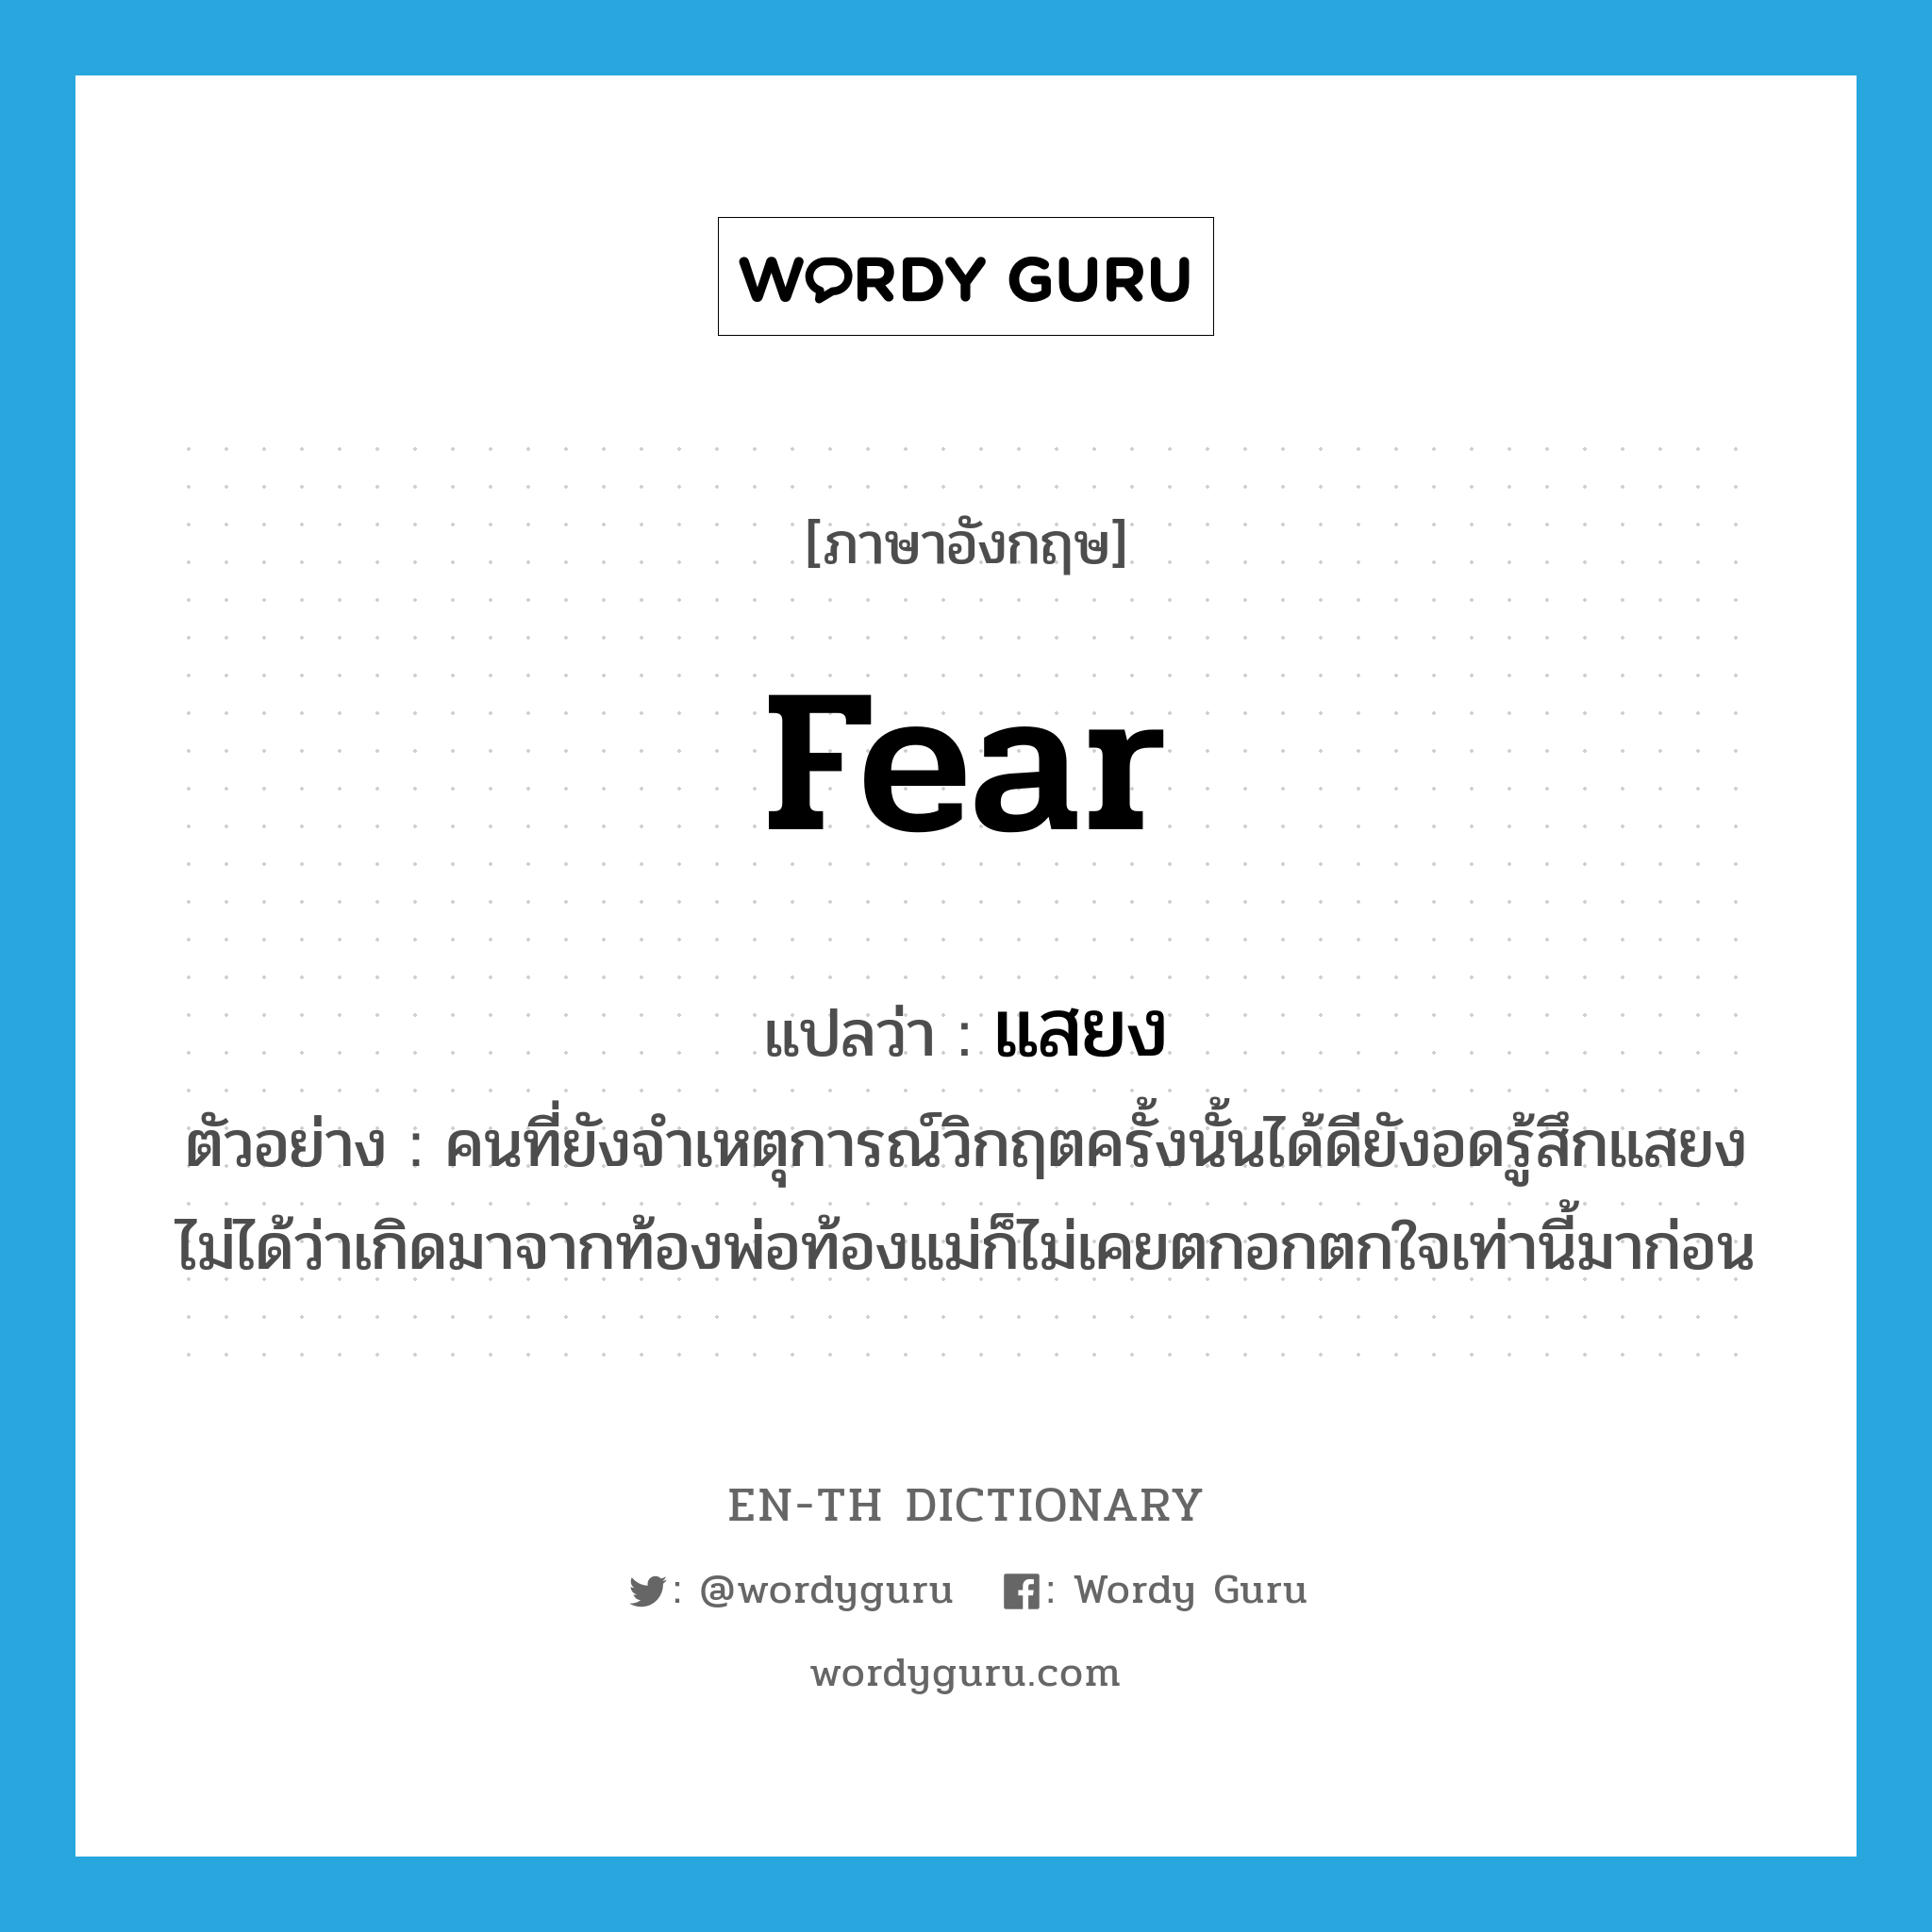 fear แปลว่า?, คำศัพท์ภาษาอังกฤษ fear แปลว่า แสยง ประเภท V ตัวอย่าง คนที่ยังจำเหตุการณ์วิกฤตครั้งนั้นได้ดียังอดรู้สึกแสยงไม่ได้ว่าเกิดมาจากท้องพ่อท้องแม่ก็ไม่เคยตกอกตกใจเท่านี้มาก่อน หมวด V